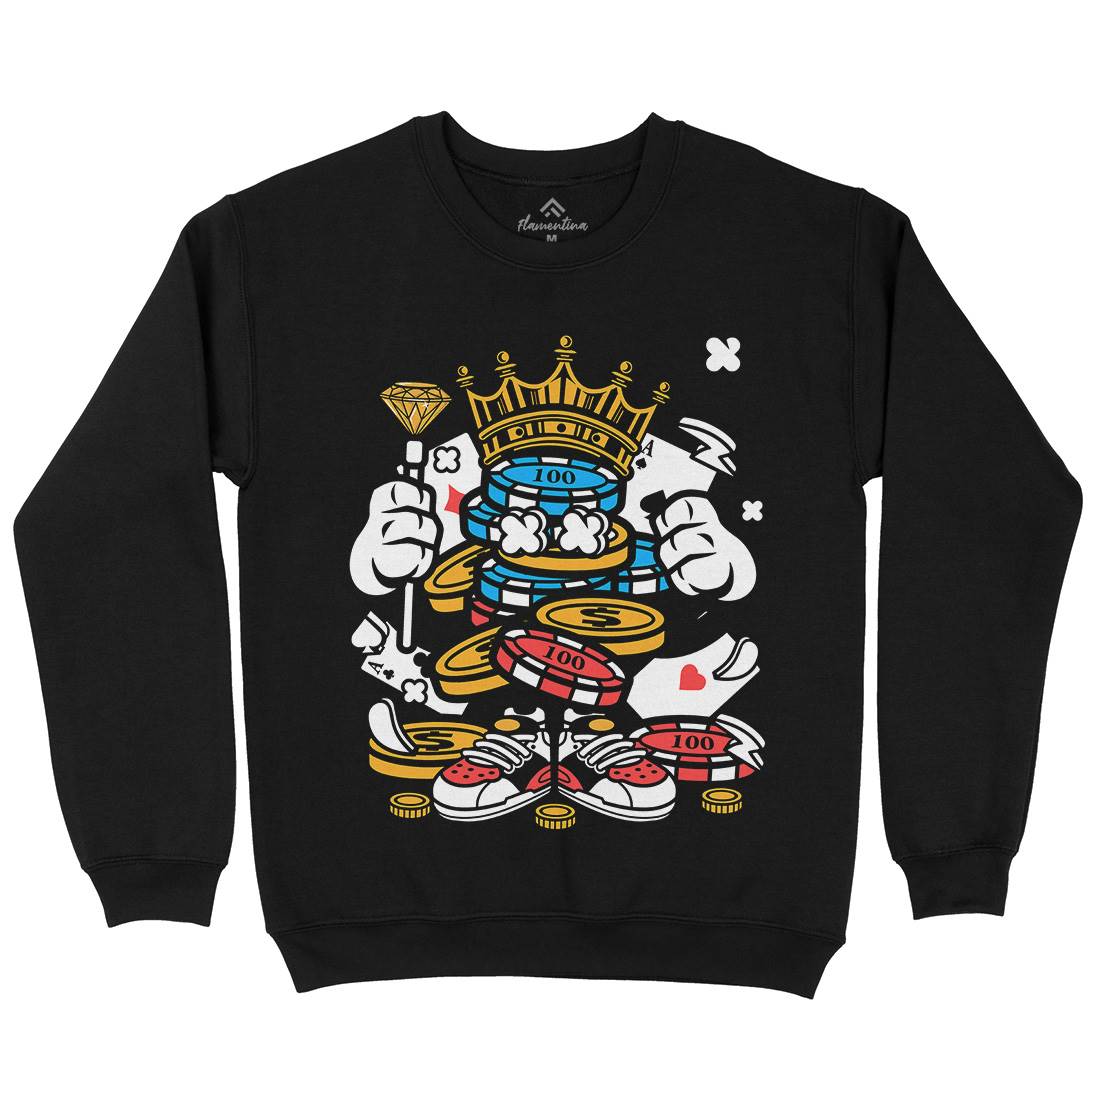 King Of Gambler Kids Crew Neck Sweatshirt Retro C159